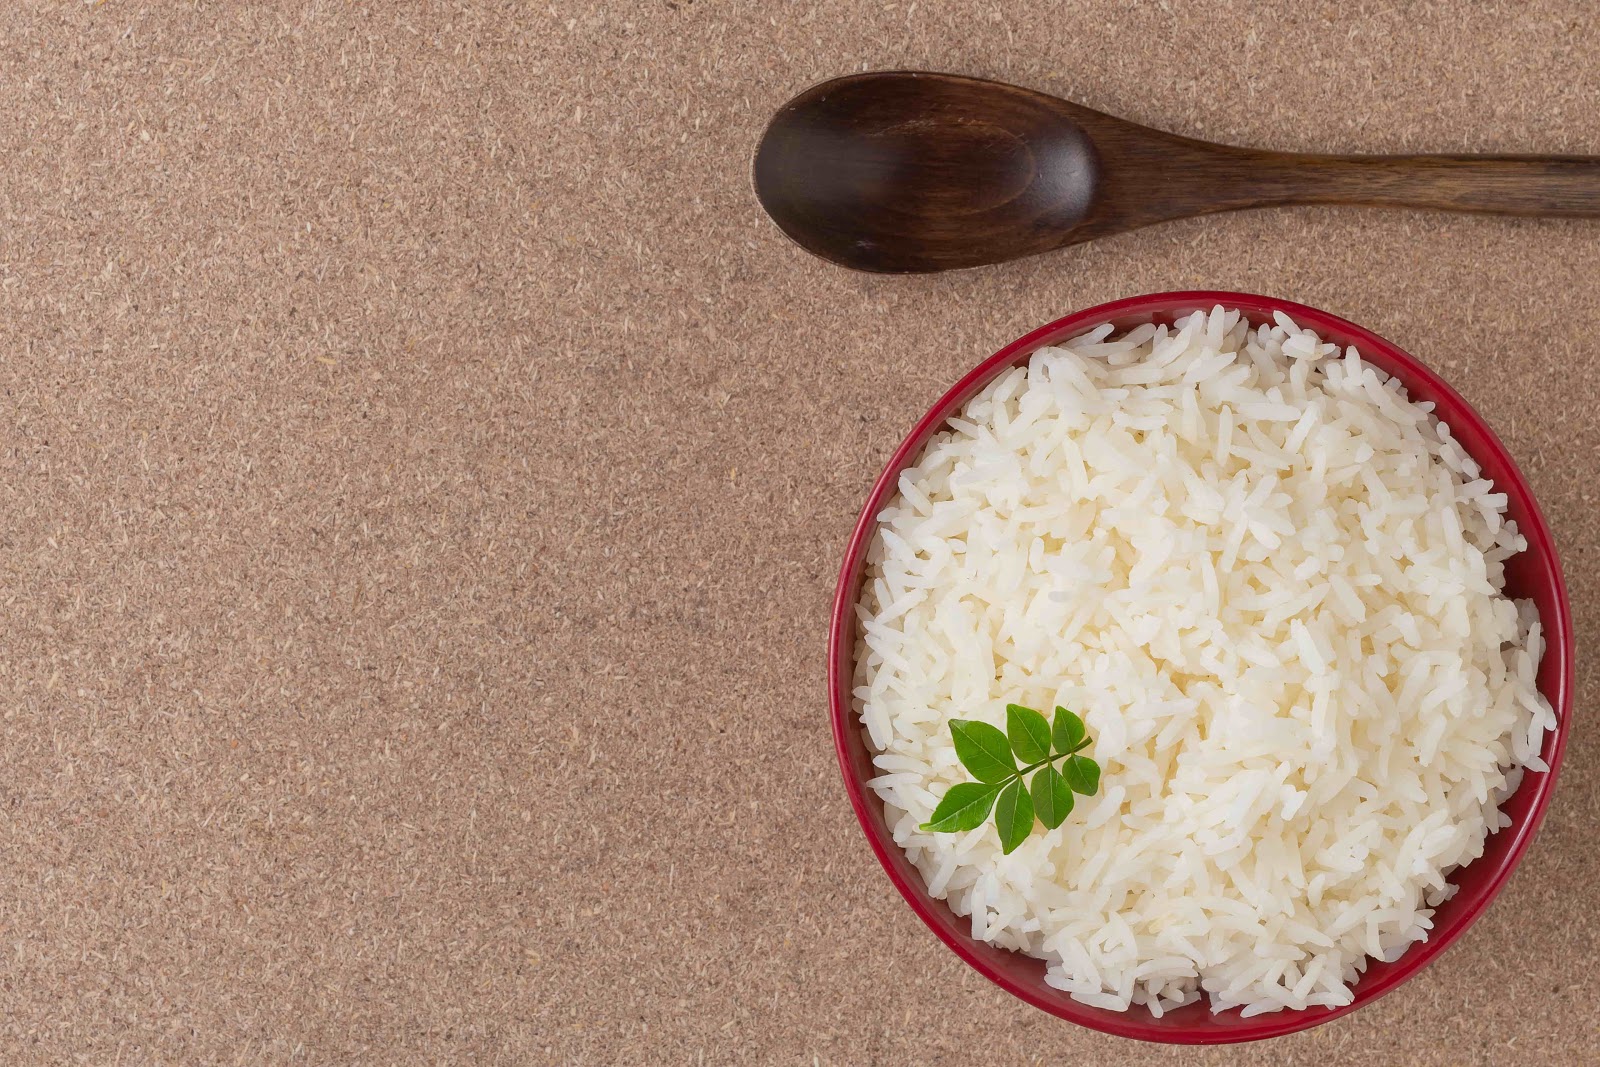 jasmine rice and white rice